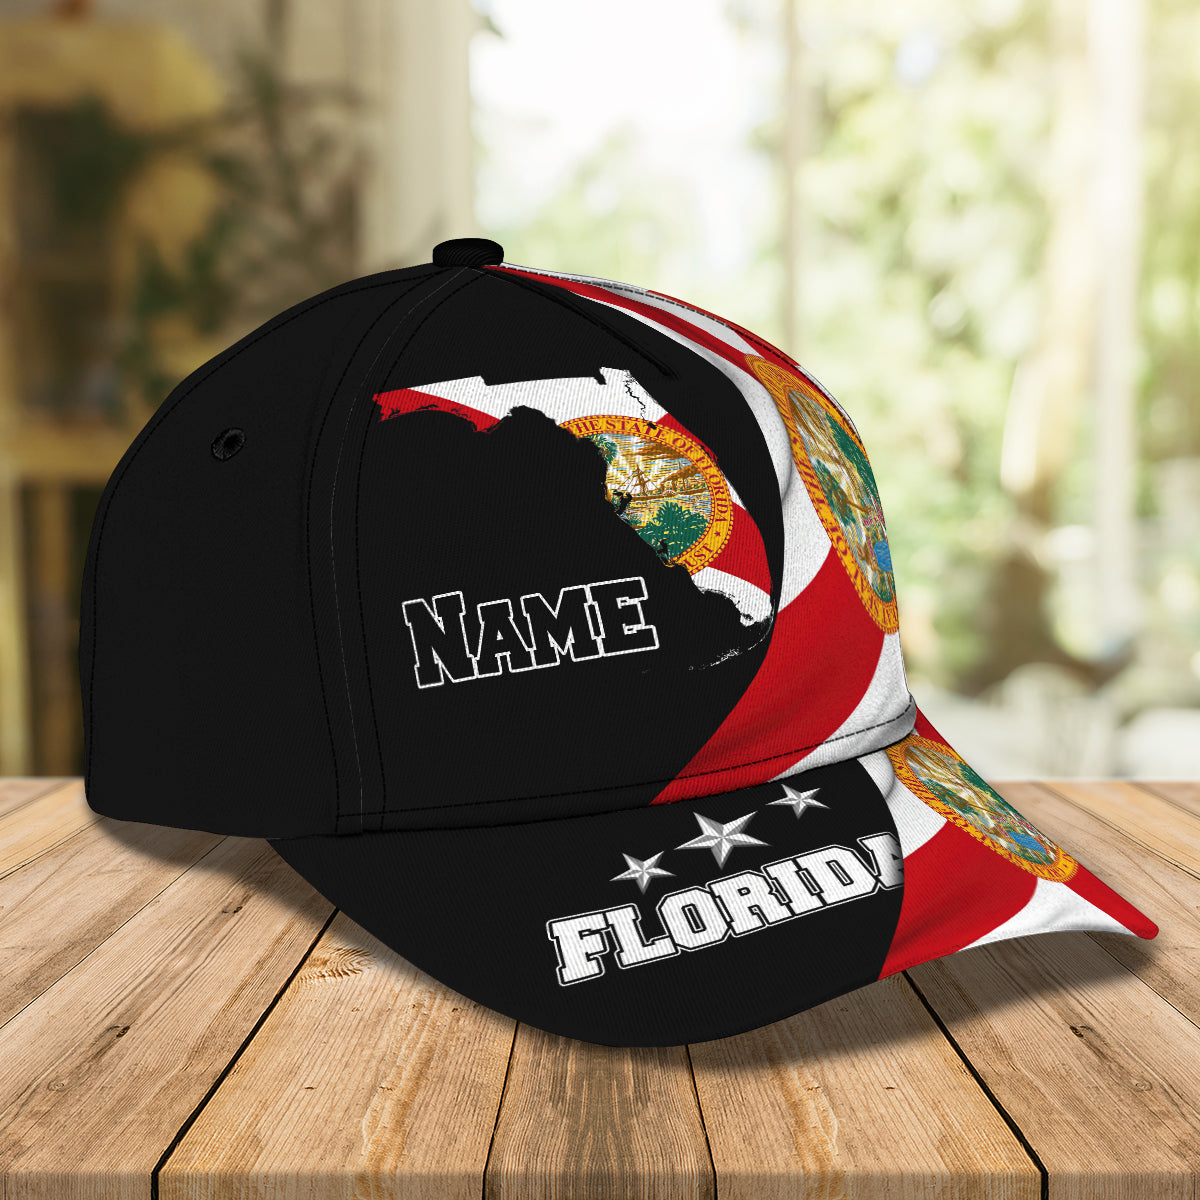 My Florida 4- Personalized Name Cap - Loop- T2k-262